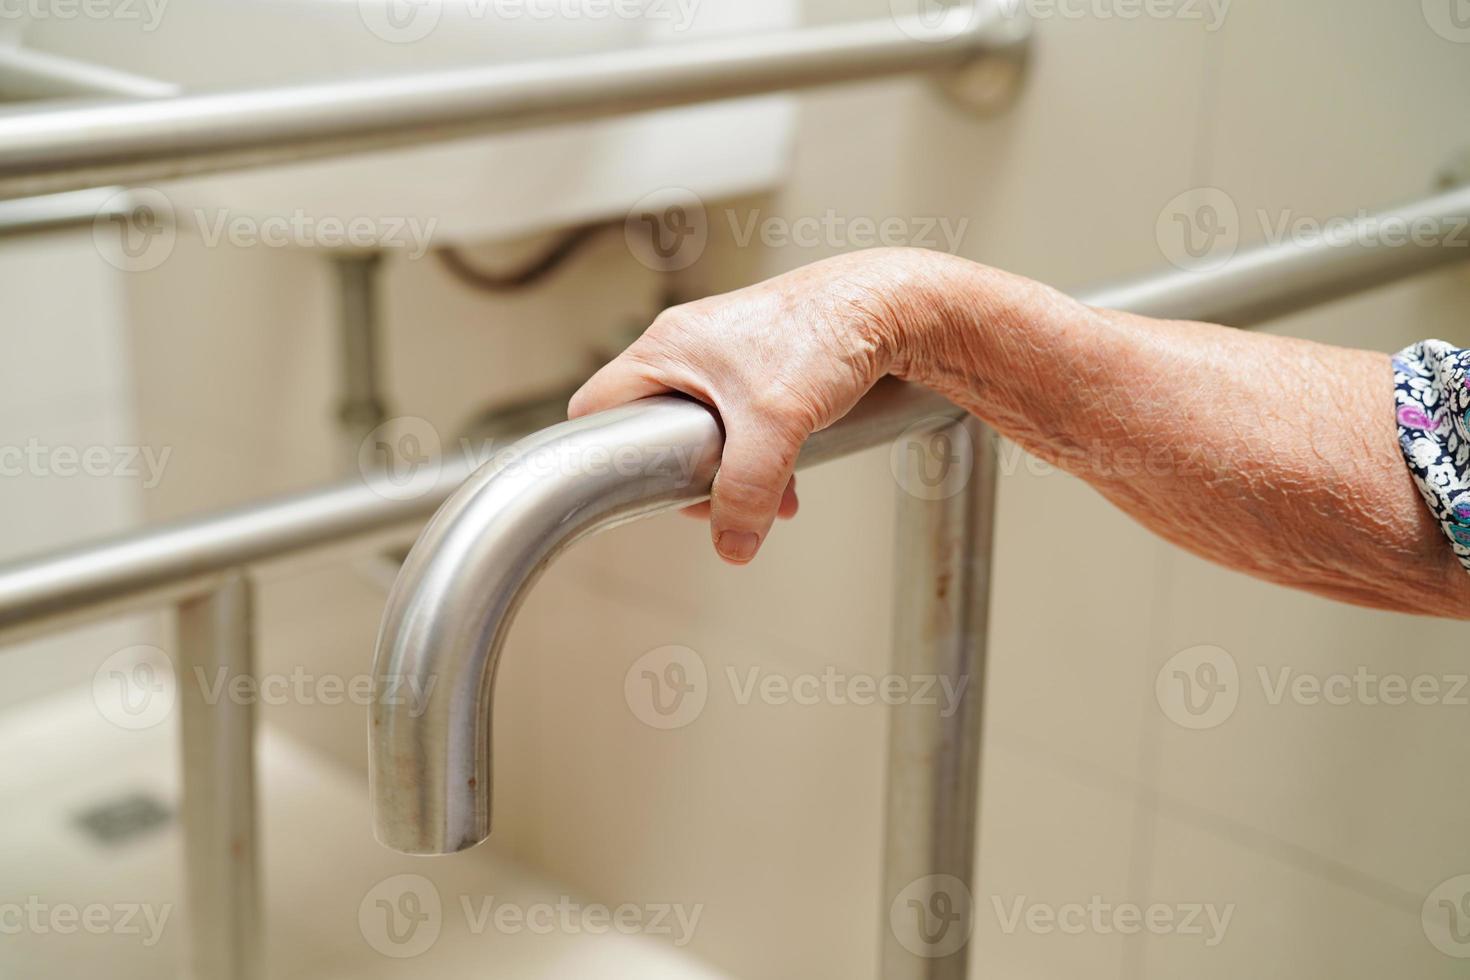 une vieille femme asiatique âgée utilise un rail de support de toilette dans la salle de bain, une barre d'appui de sécurité pour main courante, la sécurité dans l'hôpital de soins infirmiers. photo